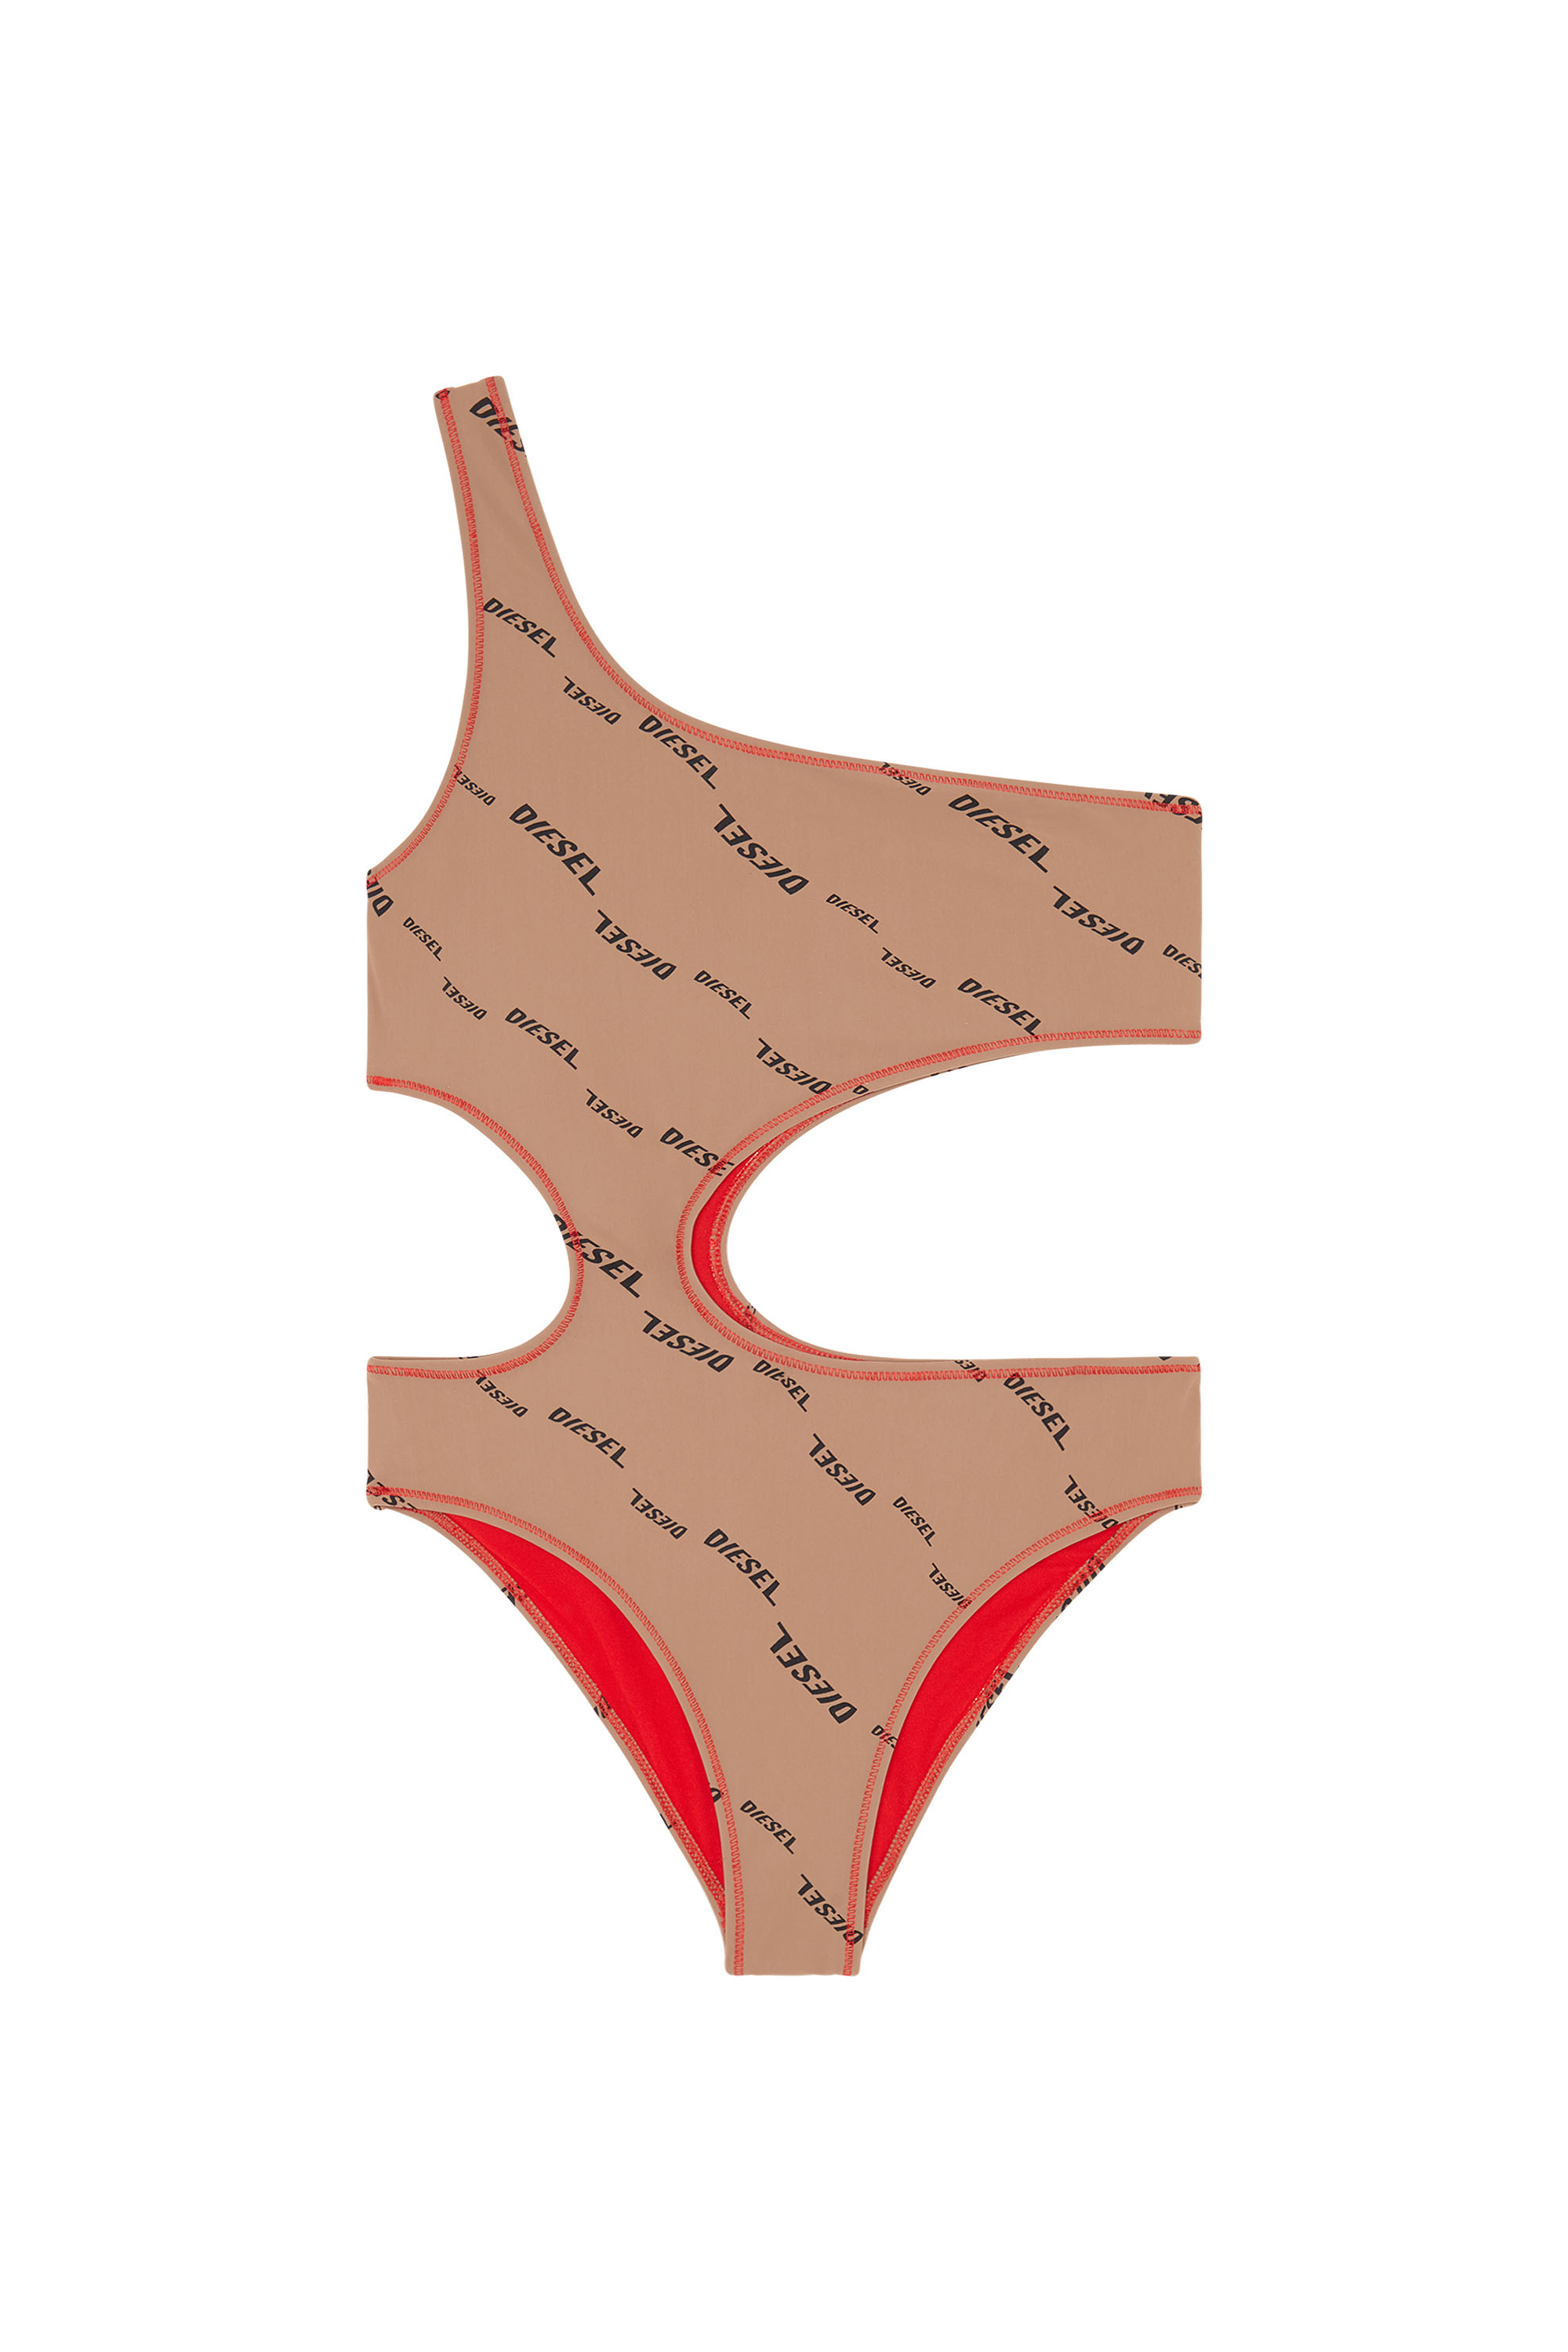 BFSW-ROWANDA, Light Brown - Swimsuits